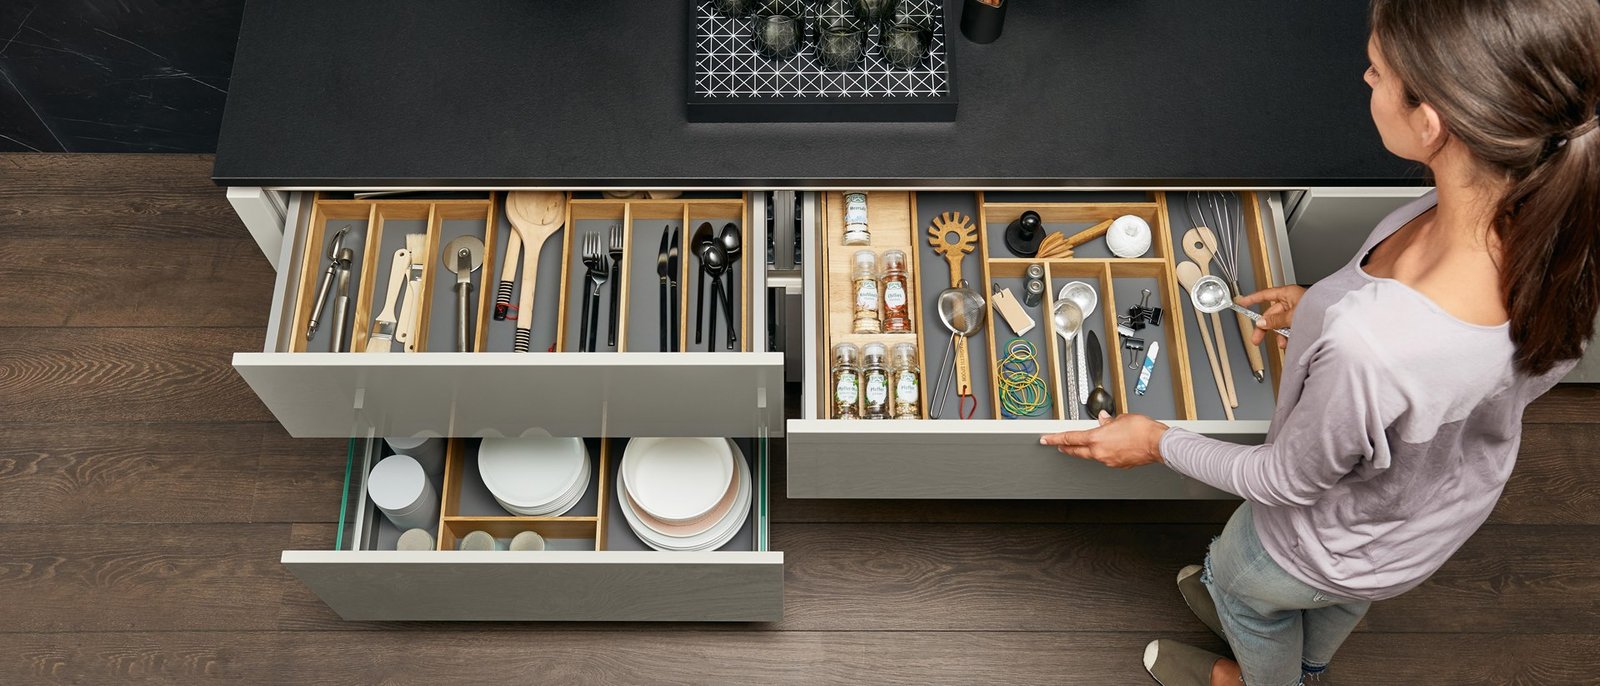 Cómo organizar los armarios de cocina?